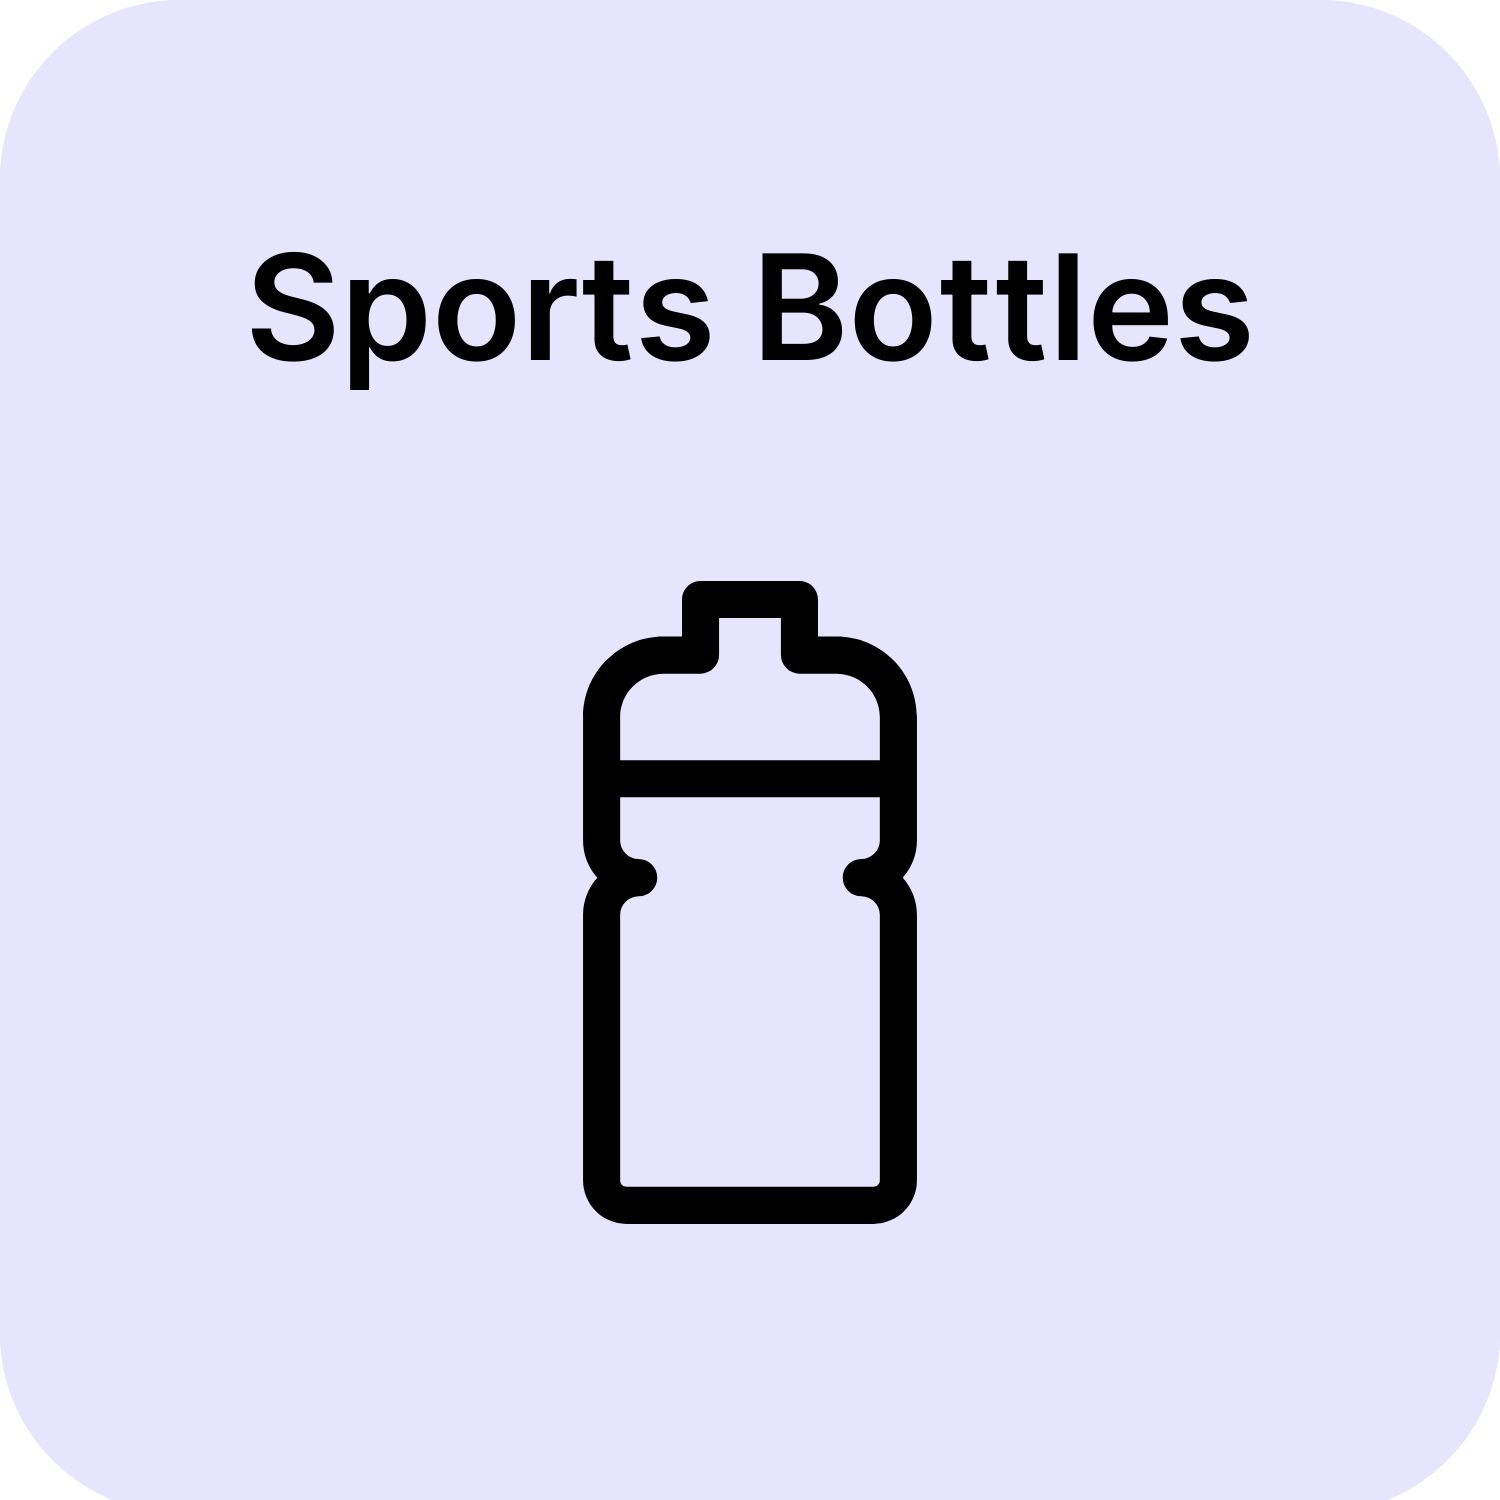 18oz H2go Glass Bottle - Custom Branded Promotional Water Bottles 